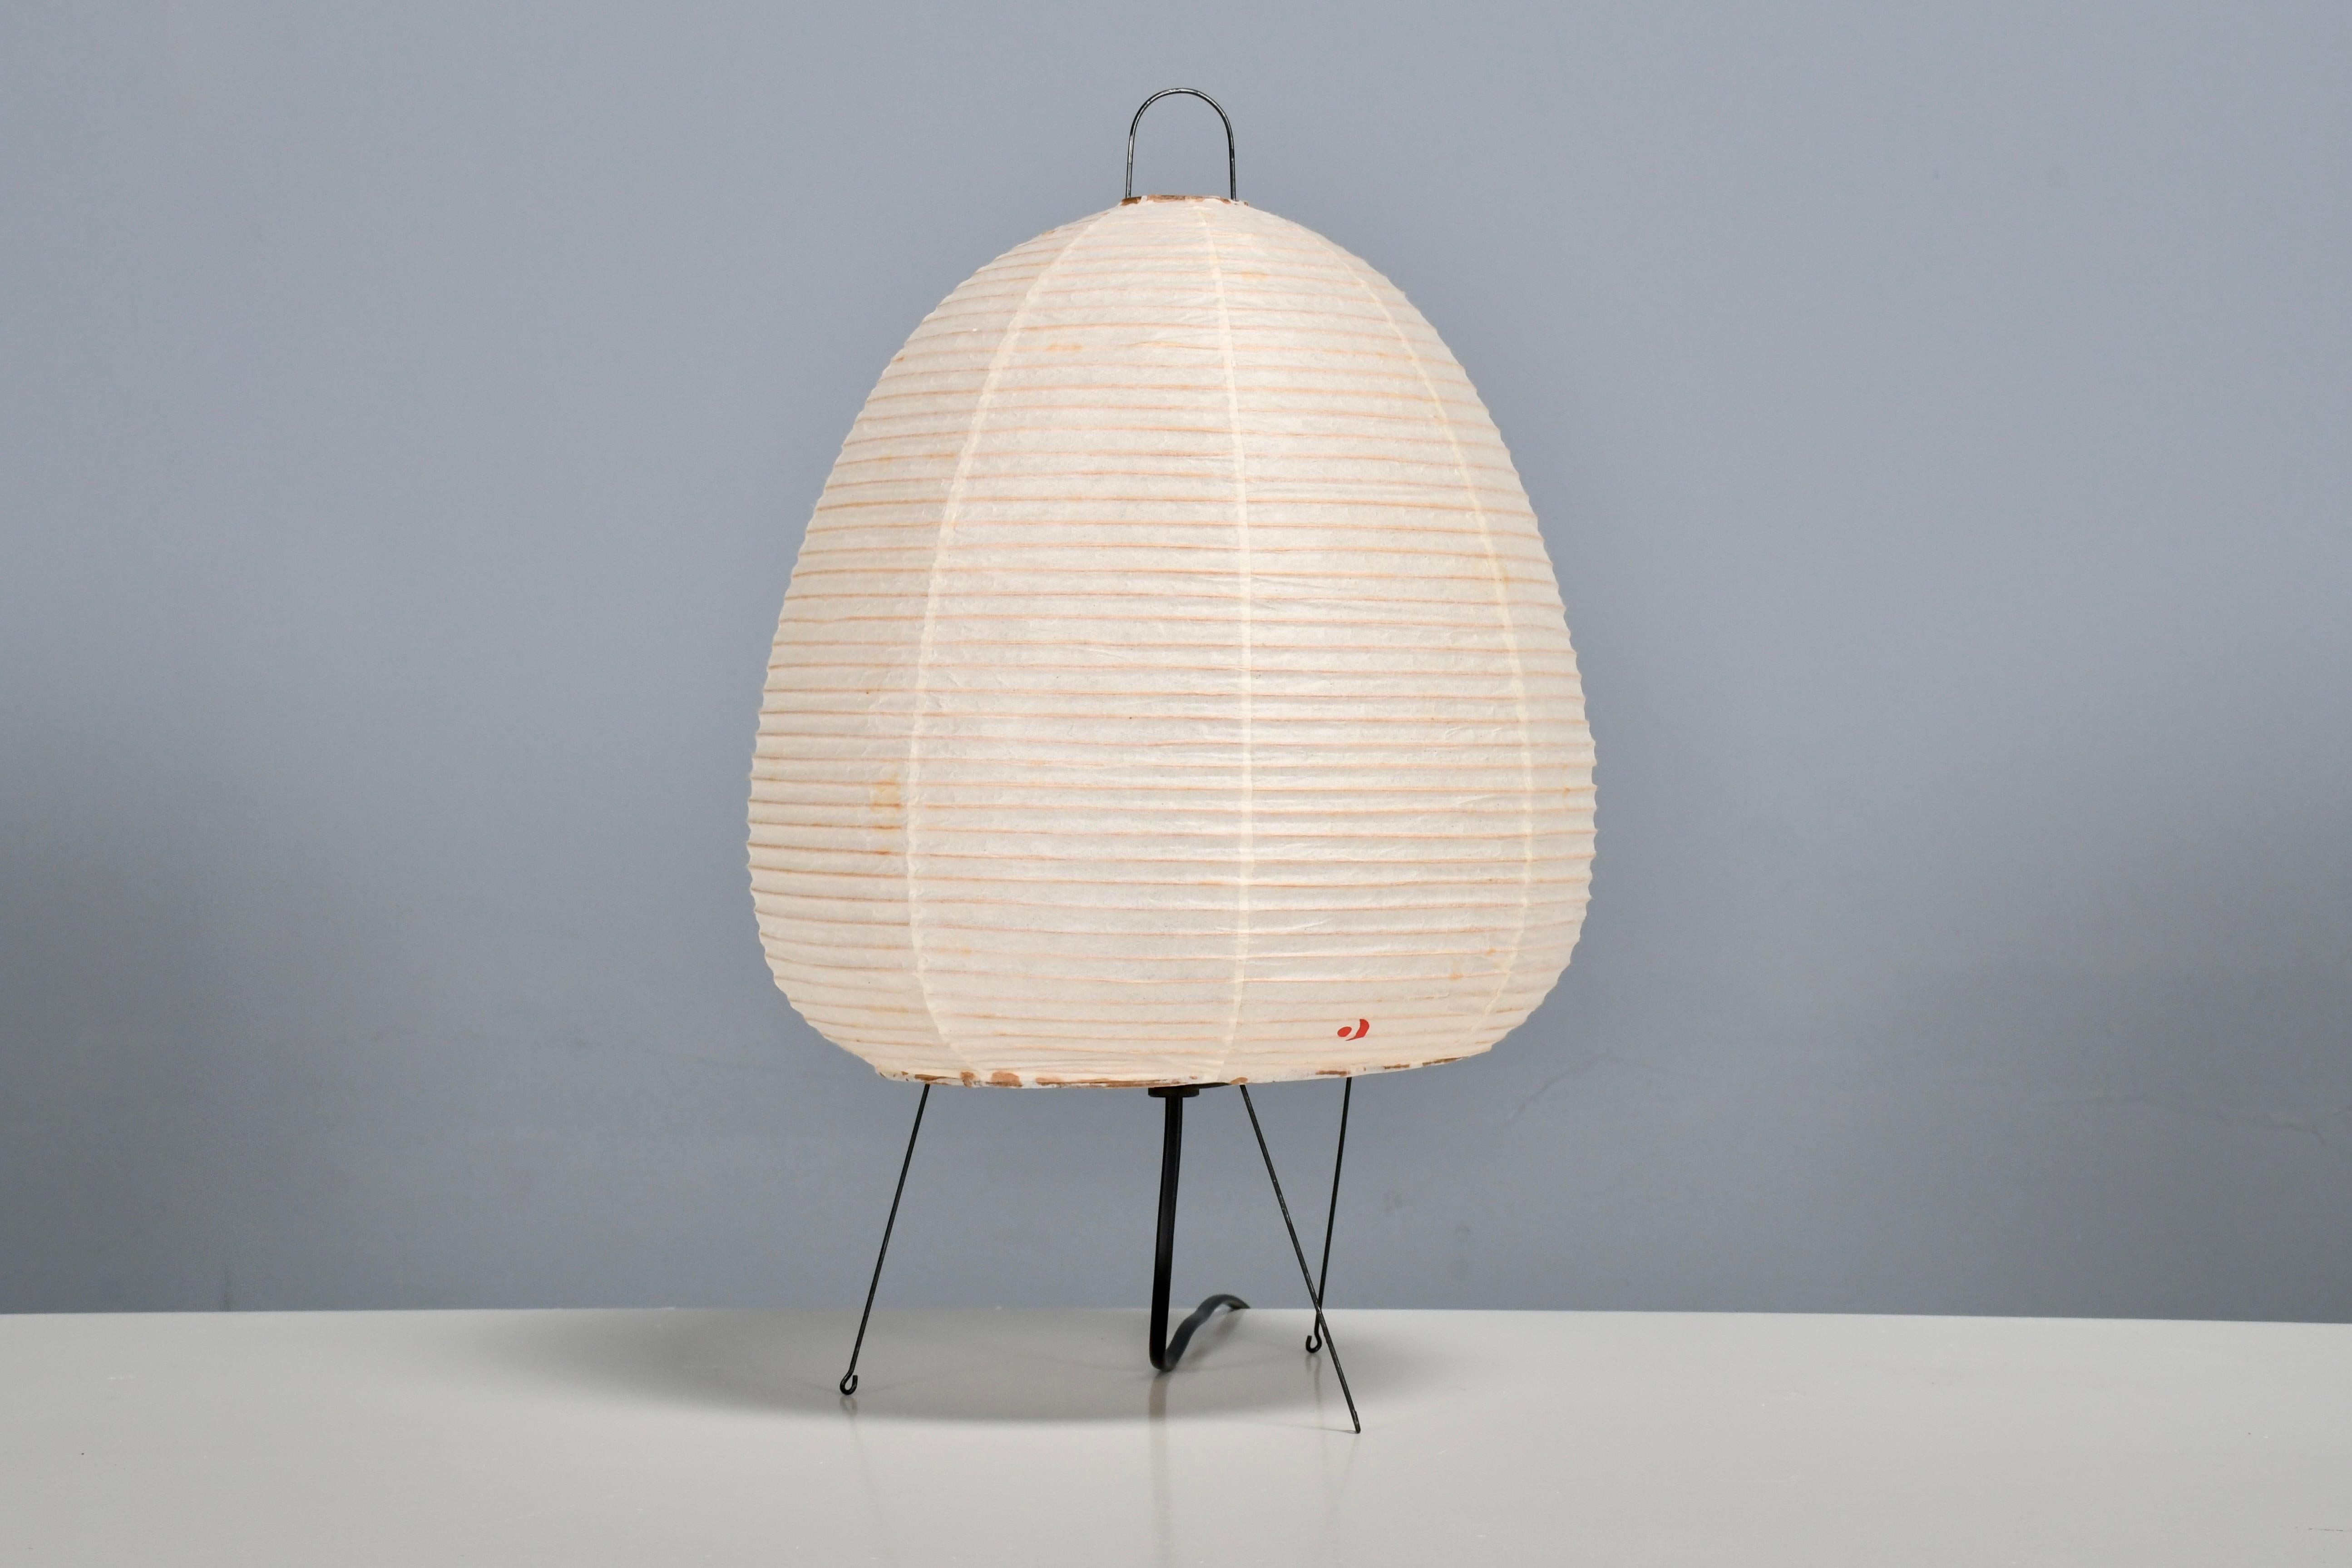 Lampe de table Akari en excellent état.   

Conçu par Isamu Noguchi en 1951 Produit par Ozeki & Co, Ltd.   

Nouveau stock ancien, emballage d'origine.

Le modèle 1A est une lampe de table avec une structure métallique et un abat-jour de forme ovale